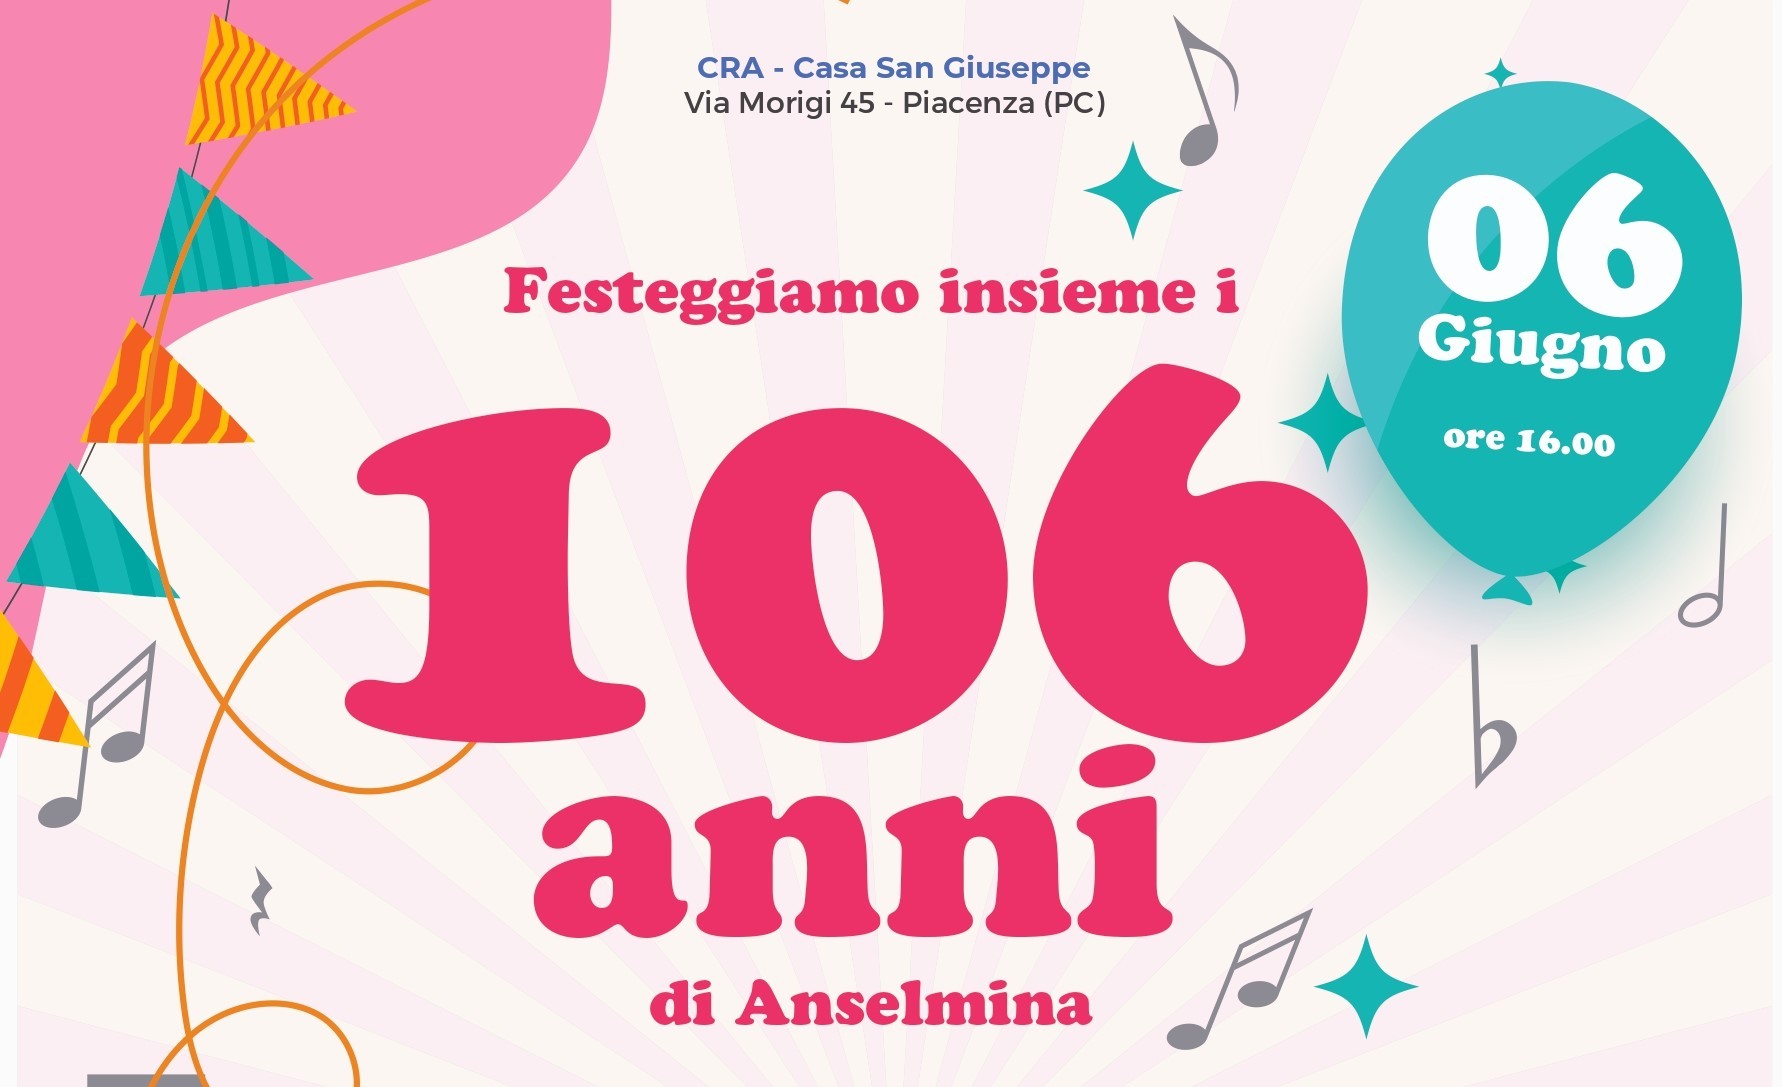 Evento CRA Casa S. Giuseppe_106_anni_Anselmina_cover